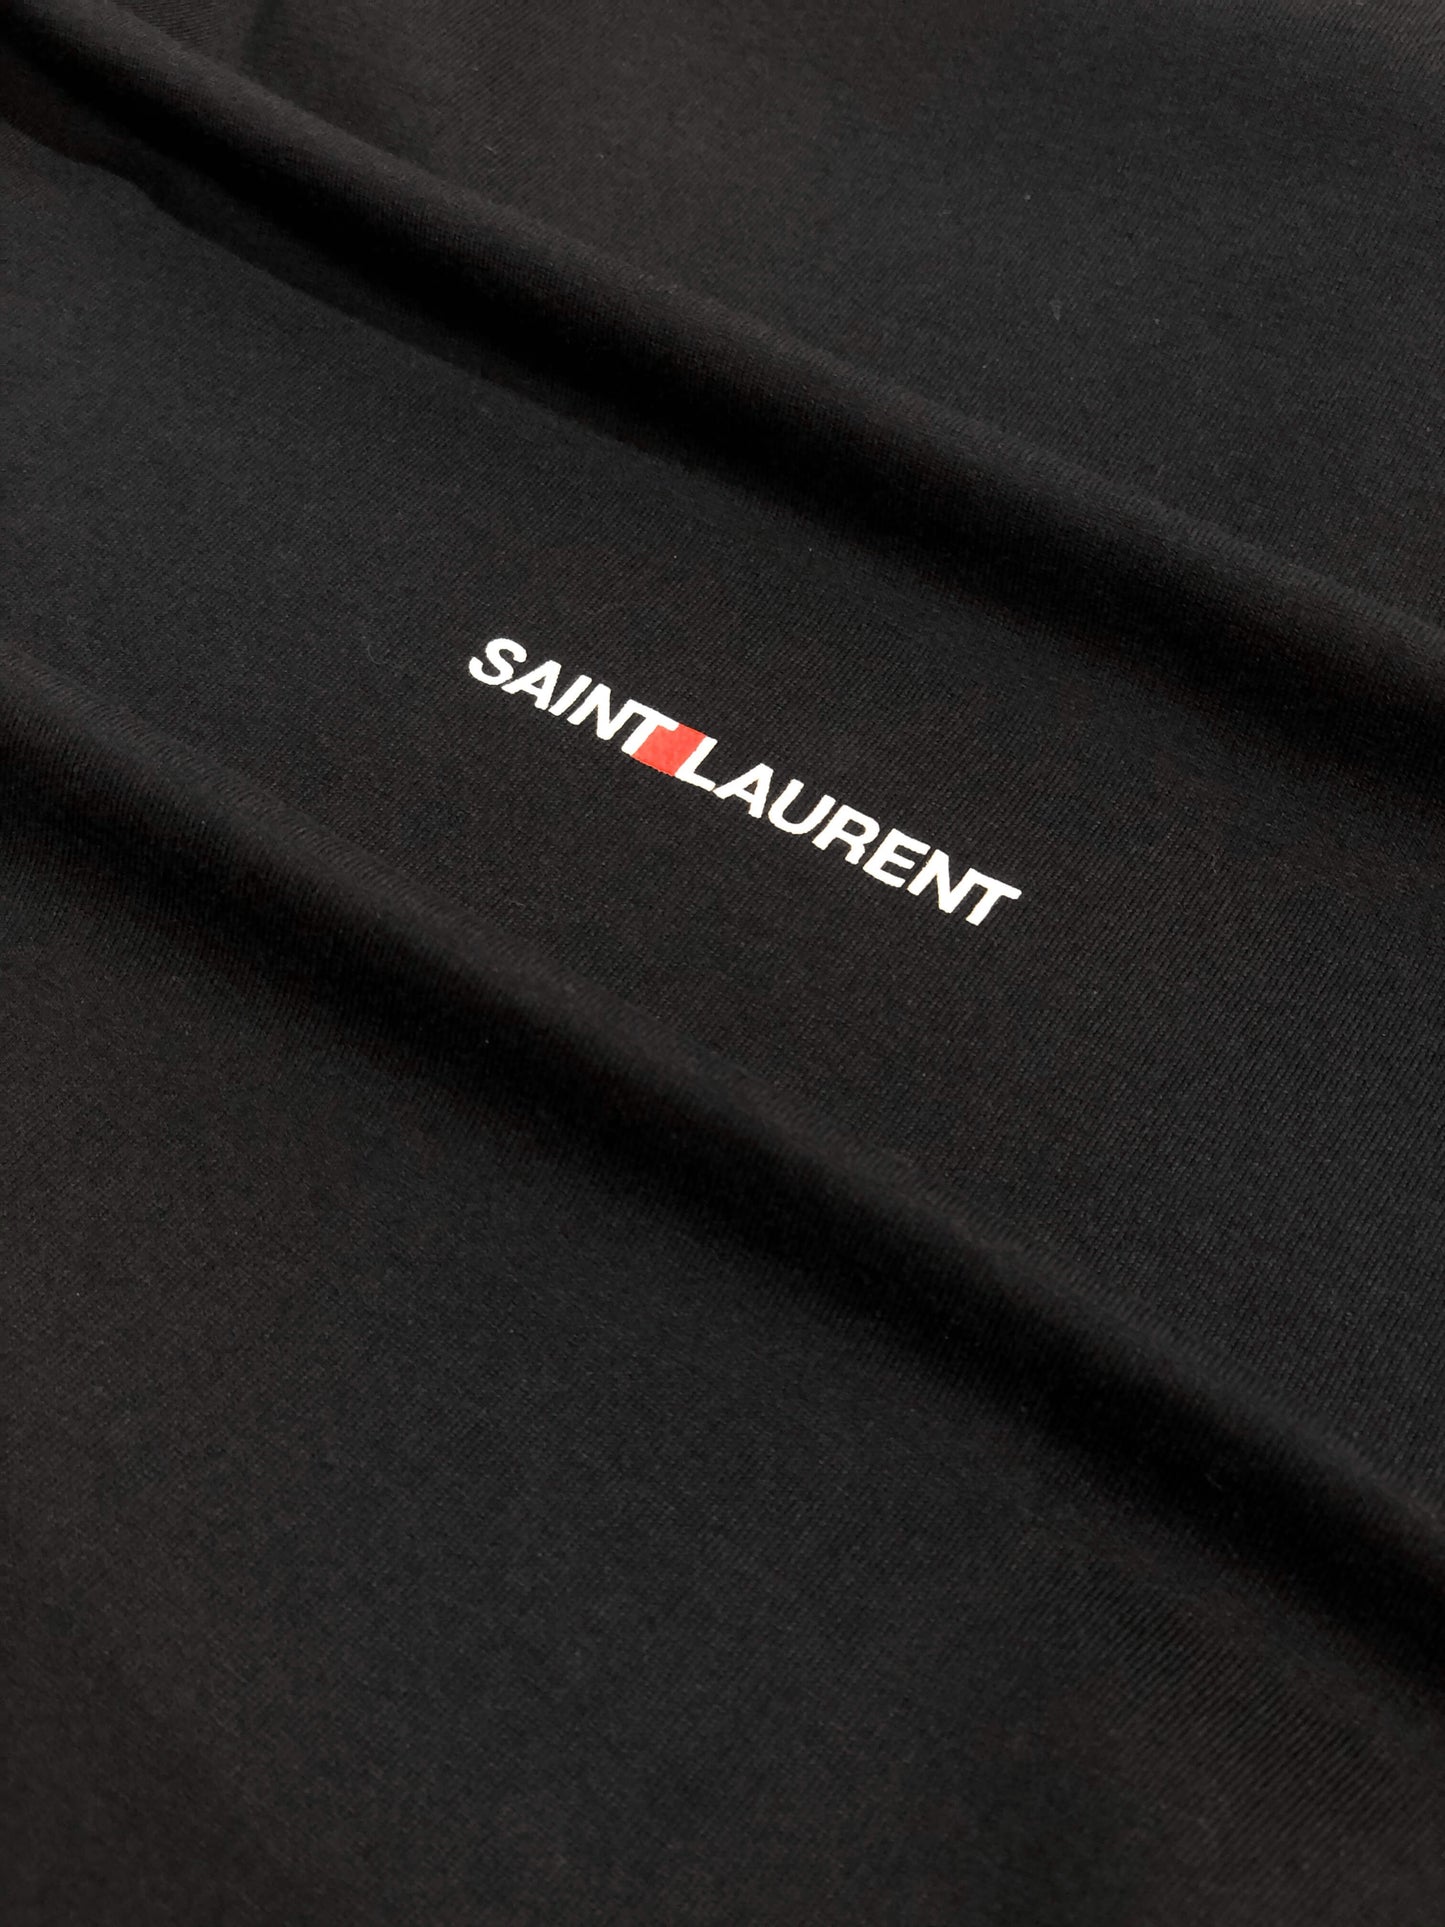 Yves Saint Laurent Logo Print Black T-shirt